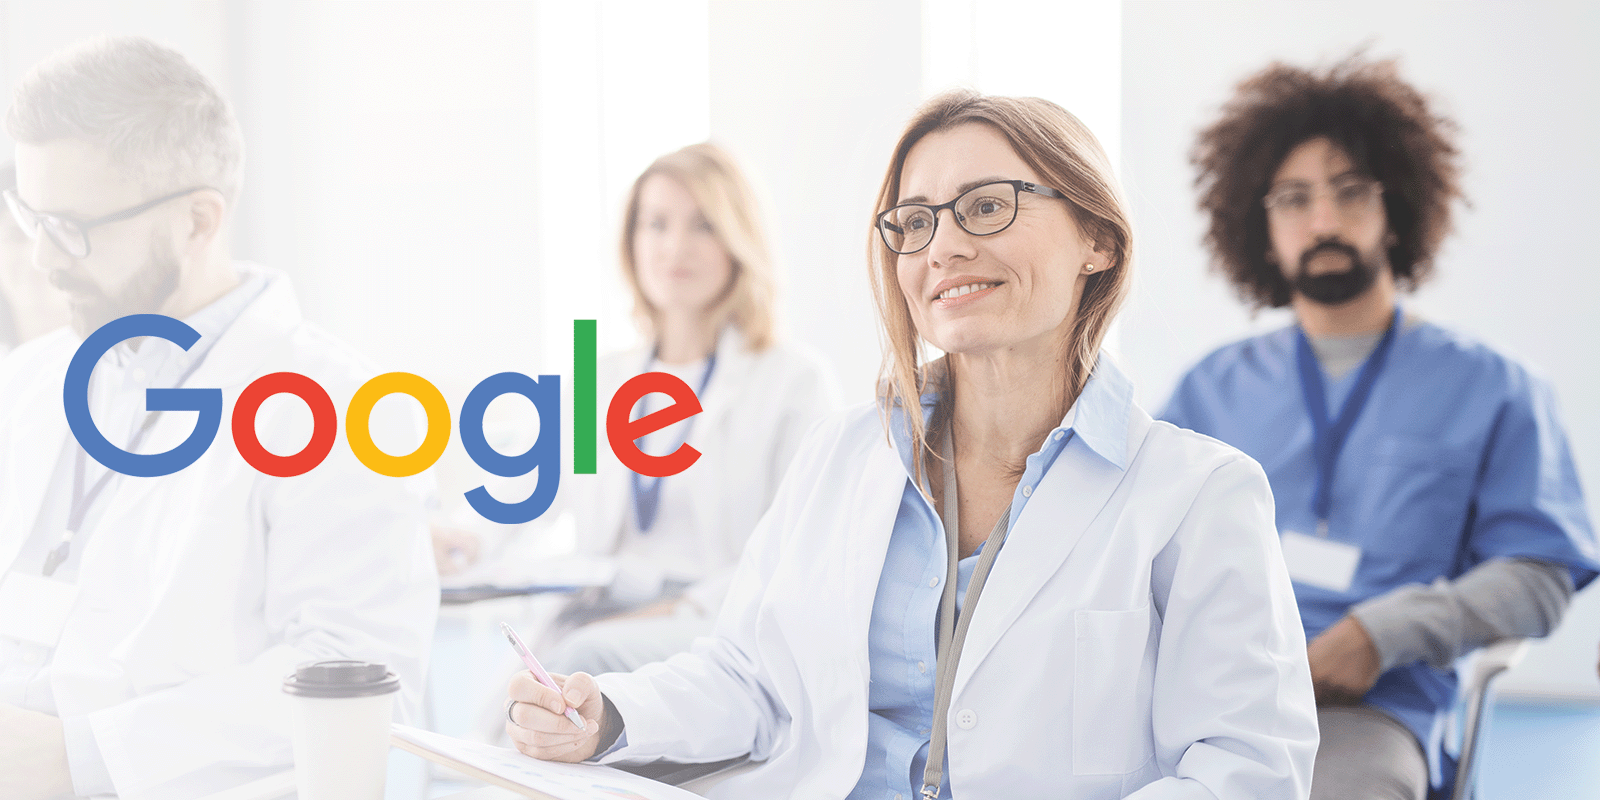 Google wprowadza pakiet sztucznej inteligencji dla medycyny Google MEDIARUN COM GOOGLE DOCTOR MEDICAL V2